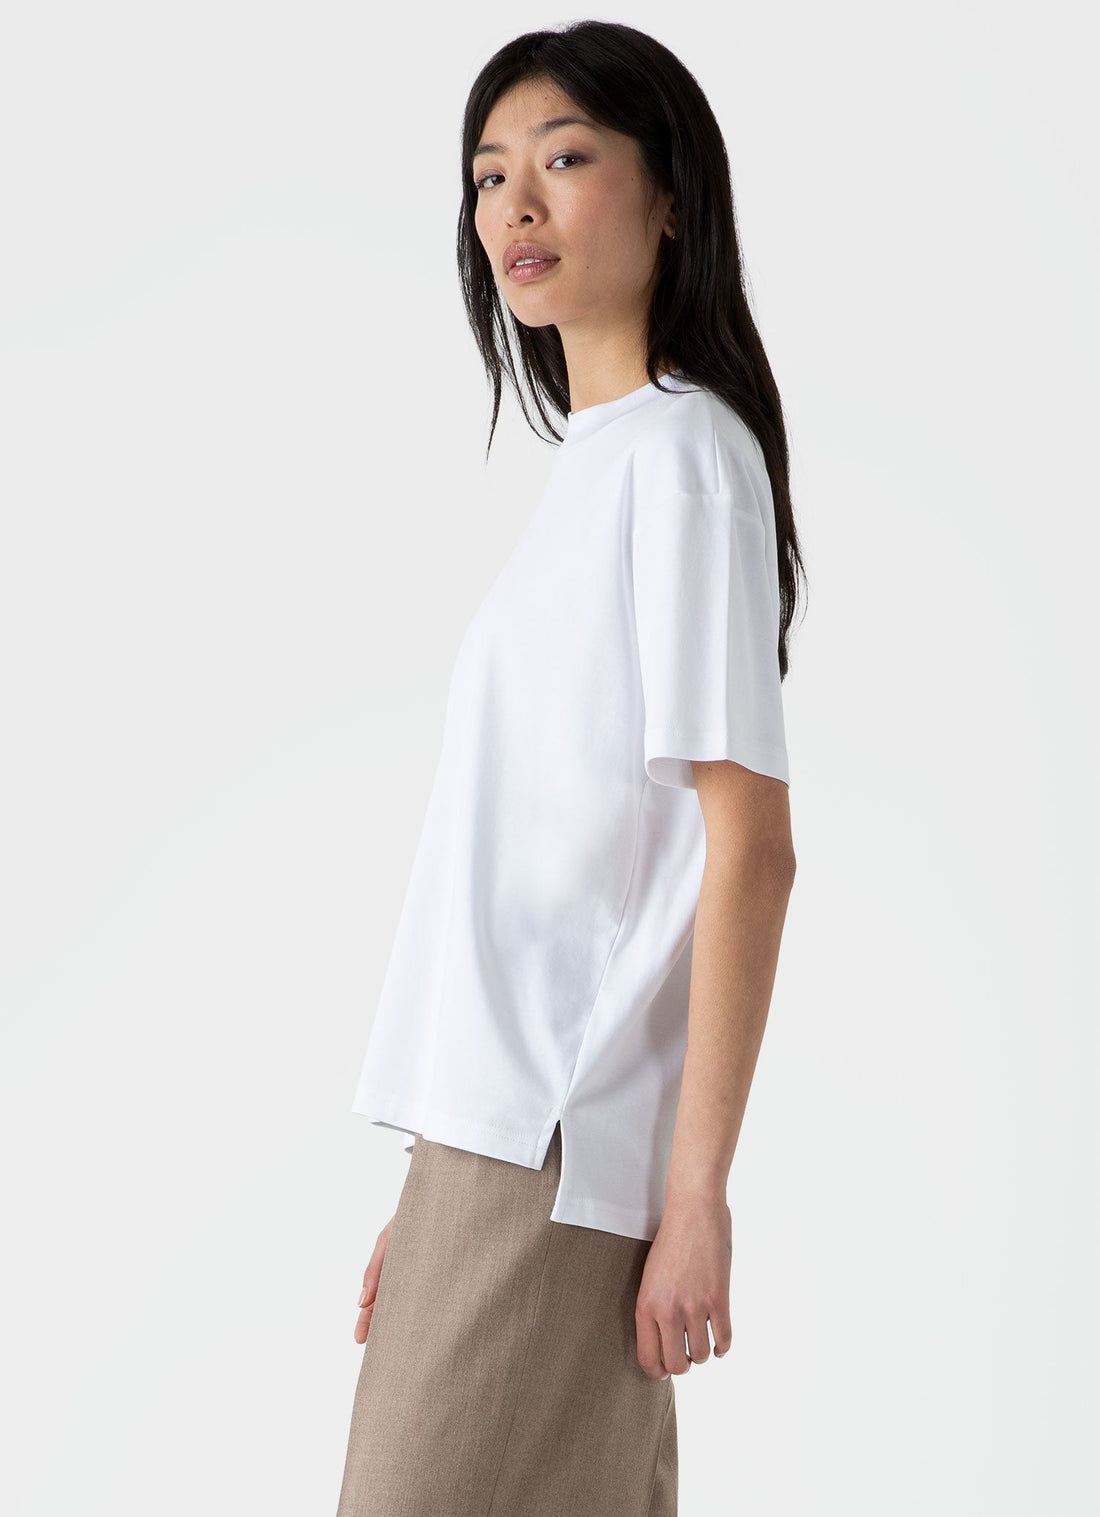 Women's Mock Neck T-shirt in White